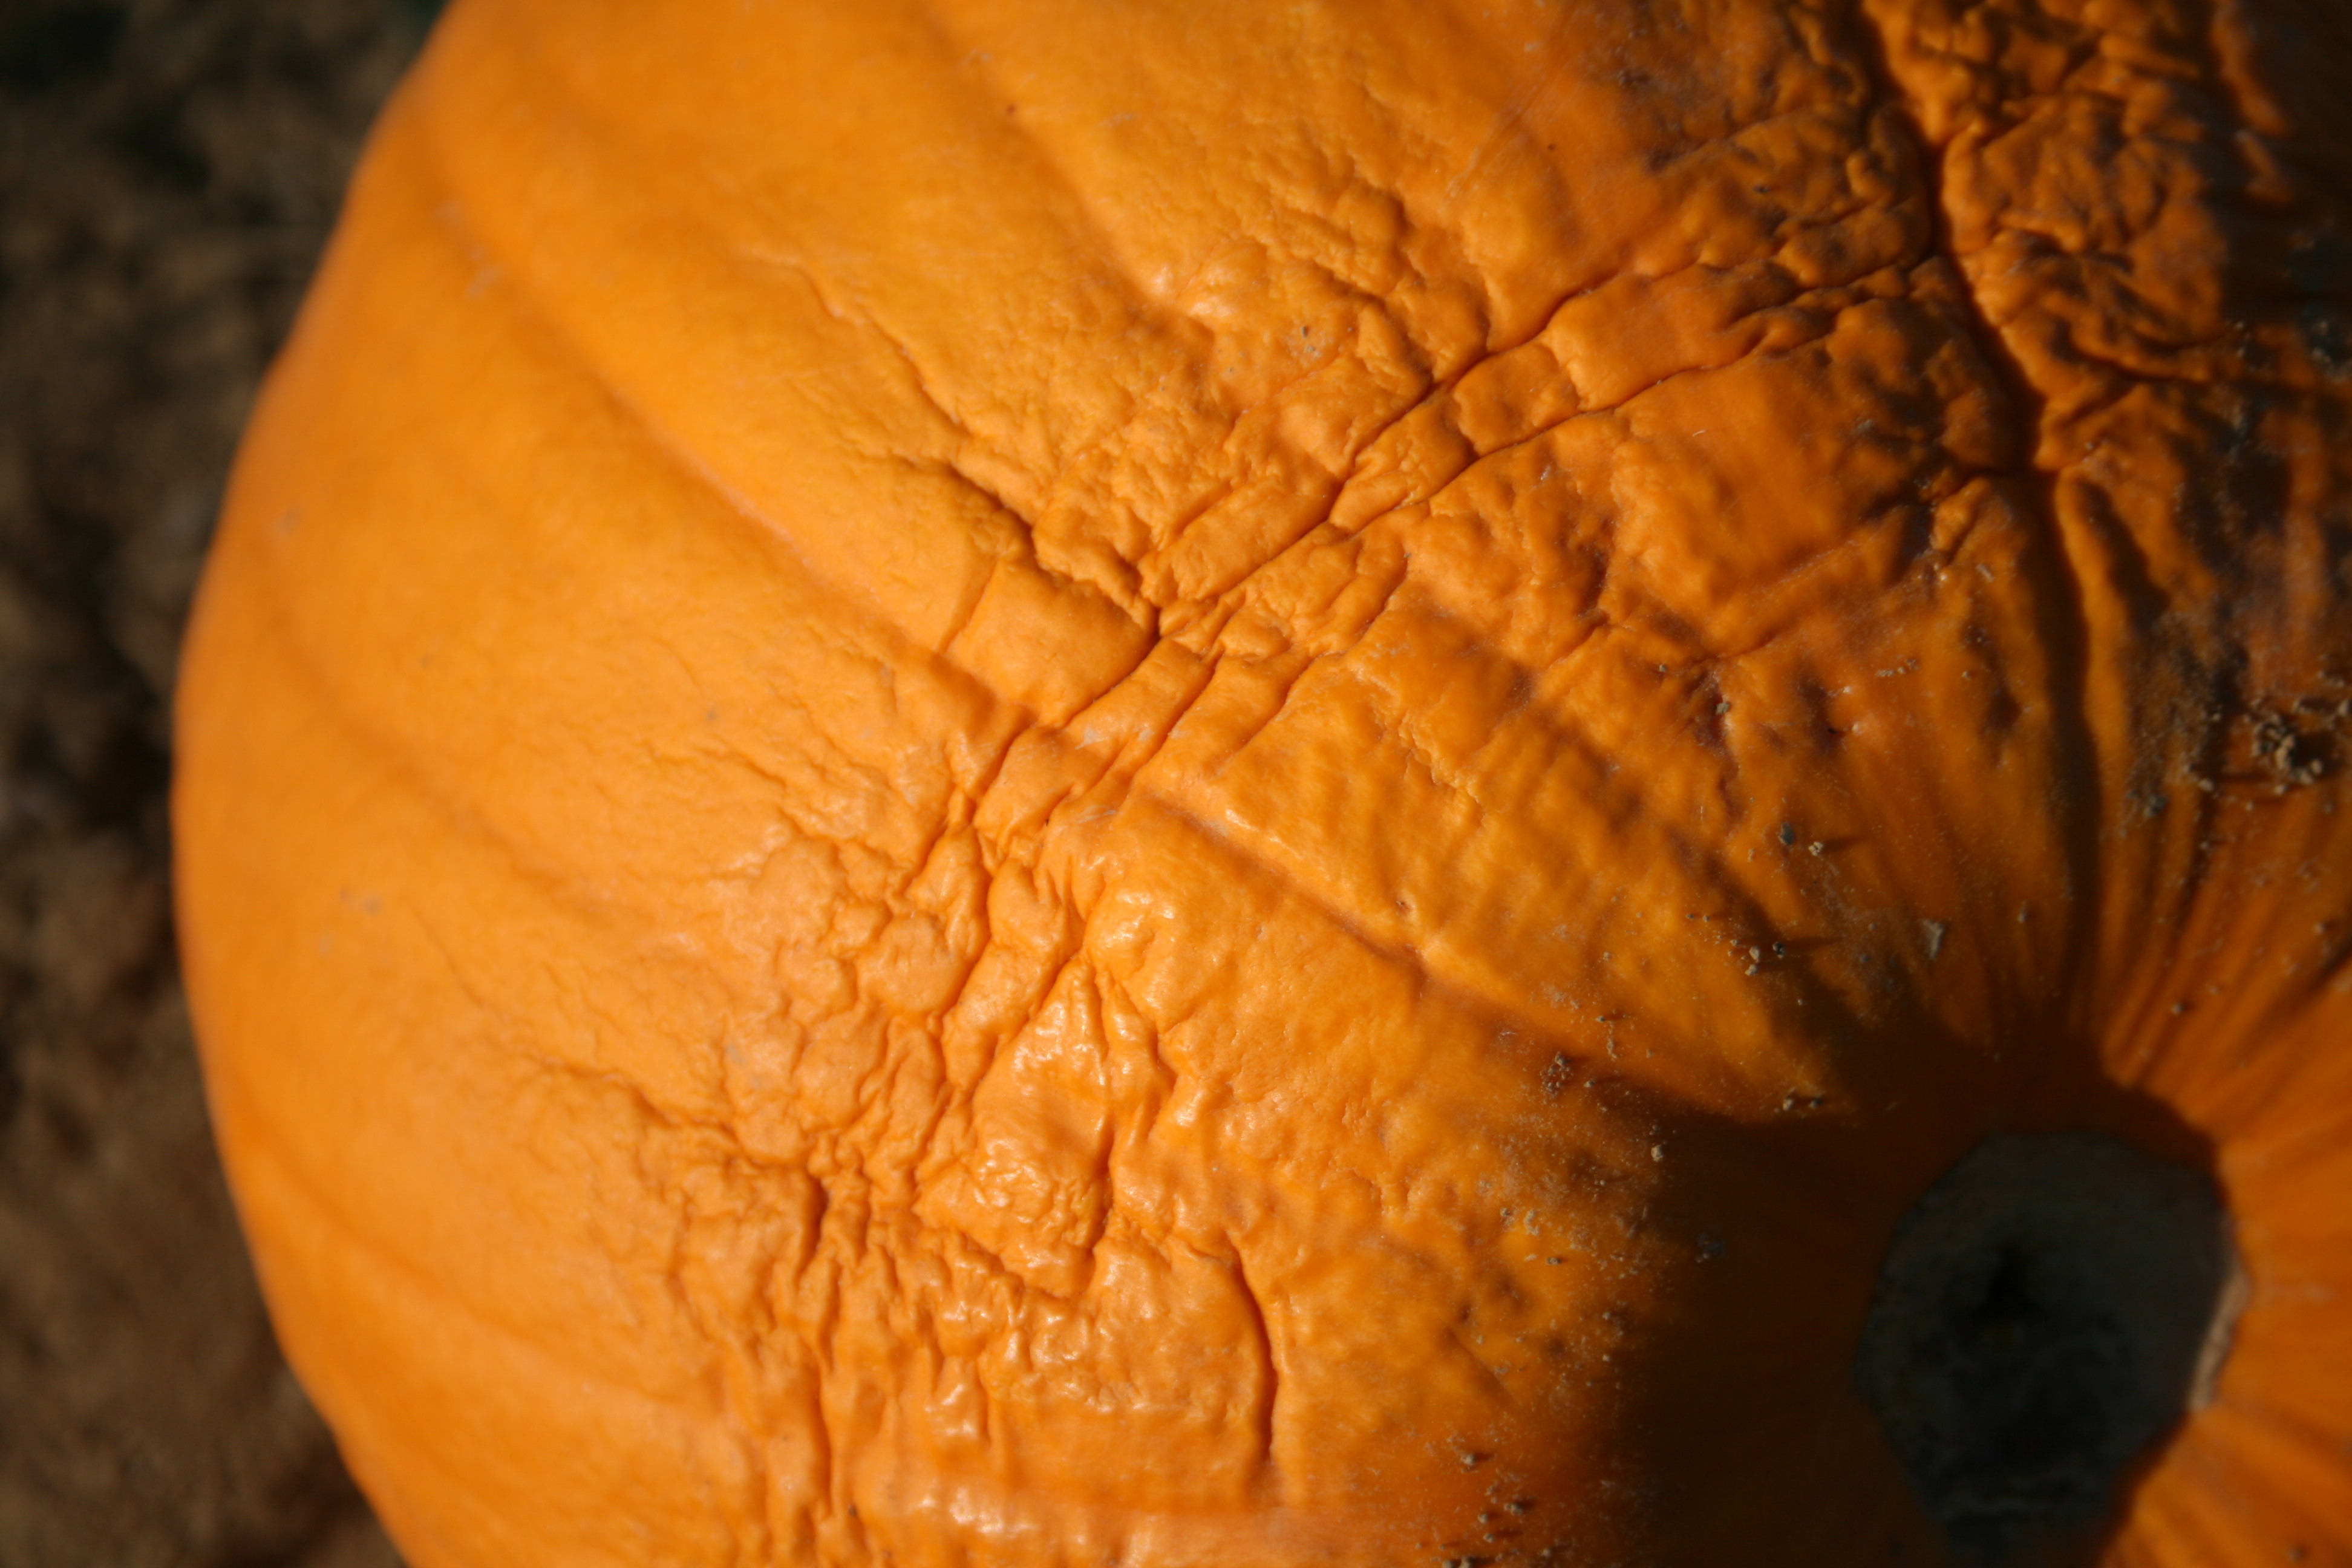 Drought symptoms on pumpkin.